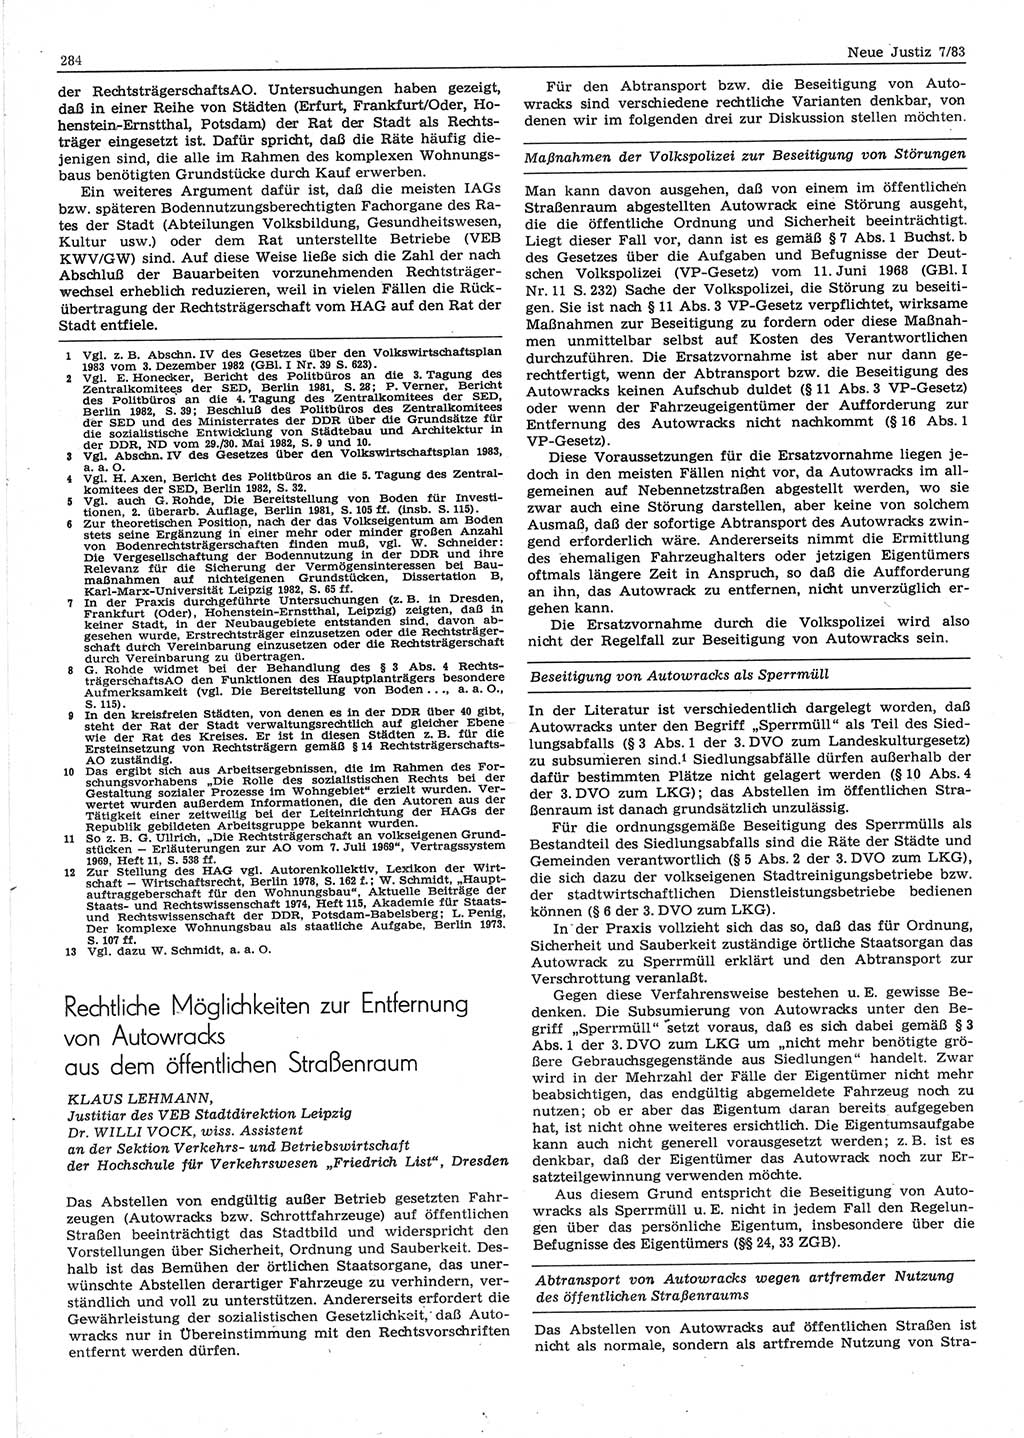 Neue Justiz (NJ), Zeitschrift für sozialistisches Recht und Gesetzlichkeit [Deutsche Demokratische Republik (DDR)], 37. Jahrgang 1983, Seite 284 (NJ DDR 1983, S. 284)